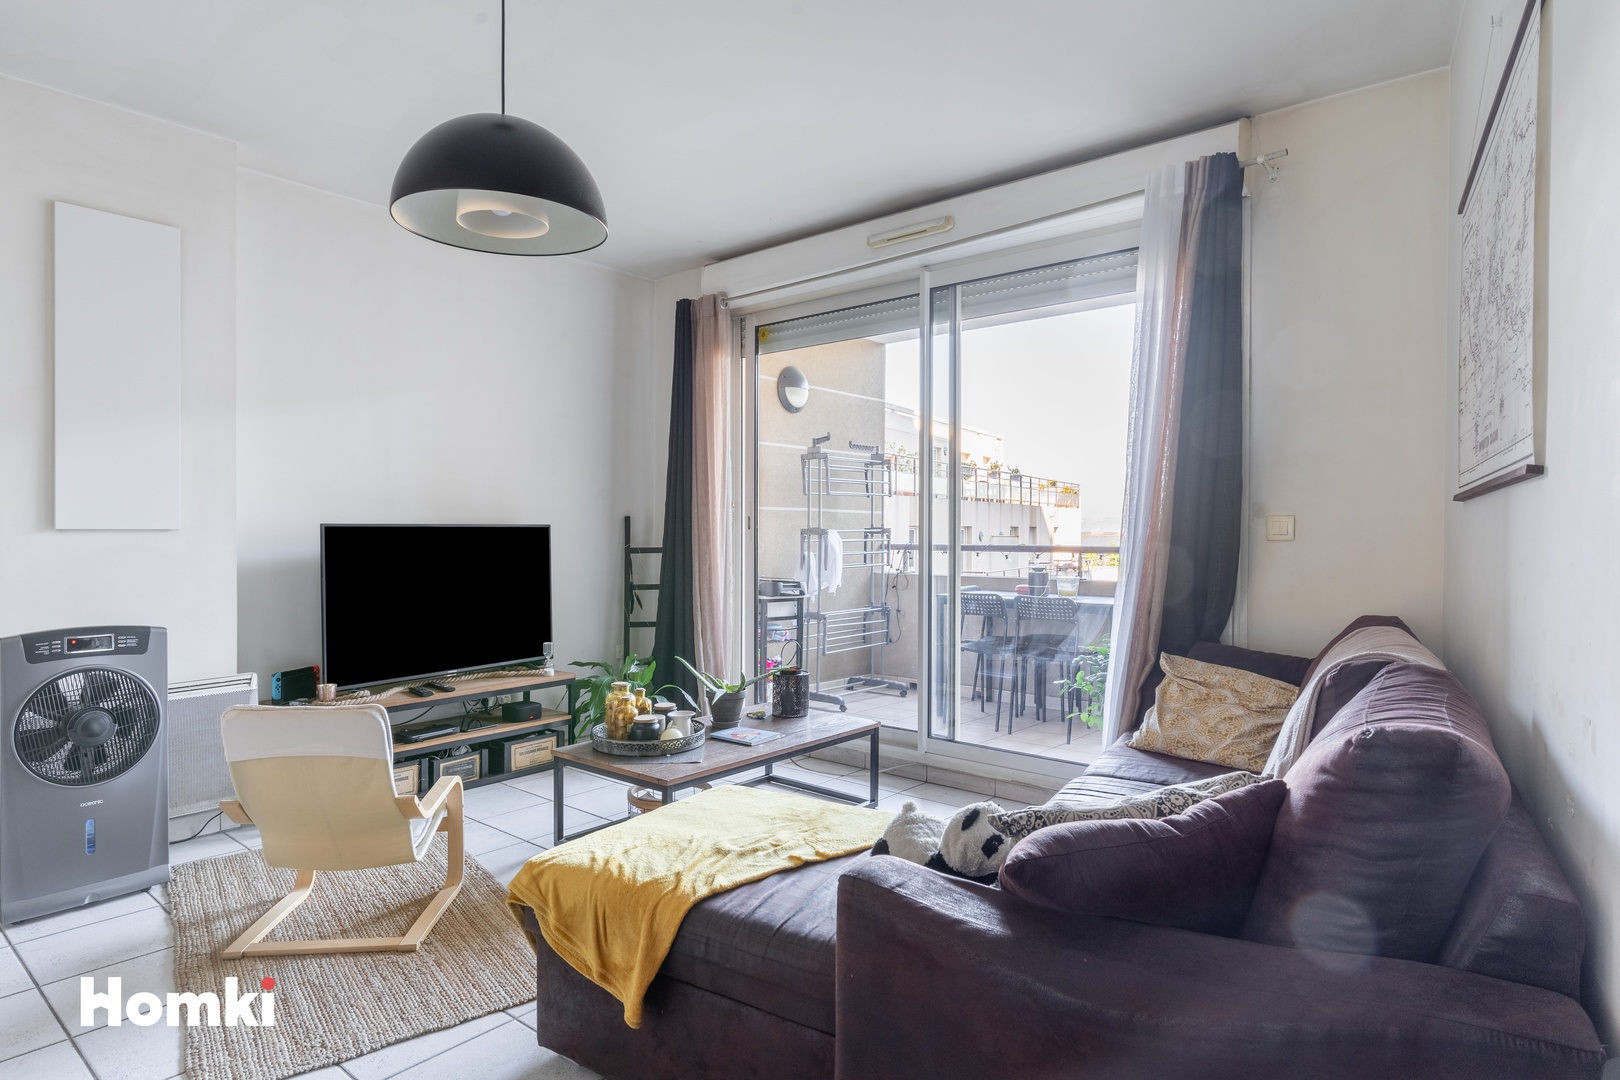 Homki - Vente Appartement  de 64.0 m² à Marseille 13004